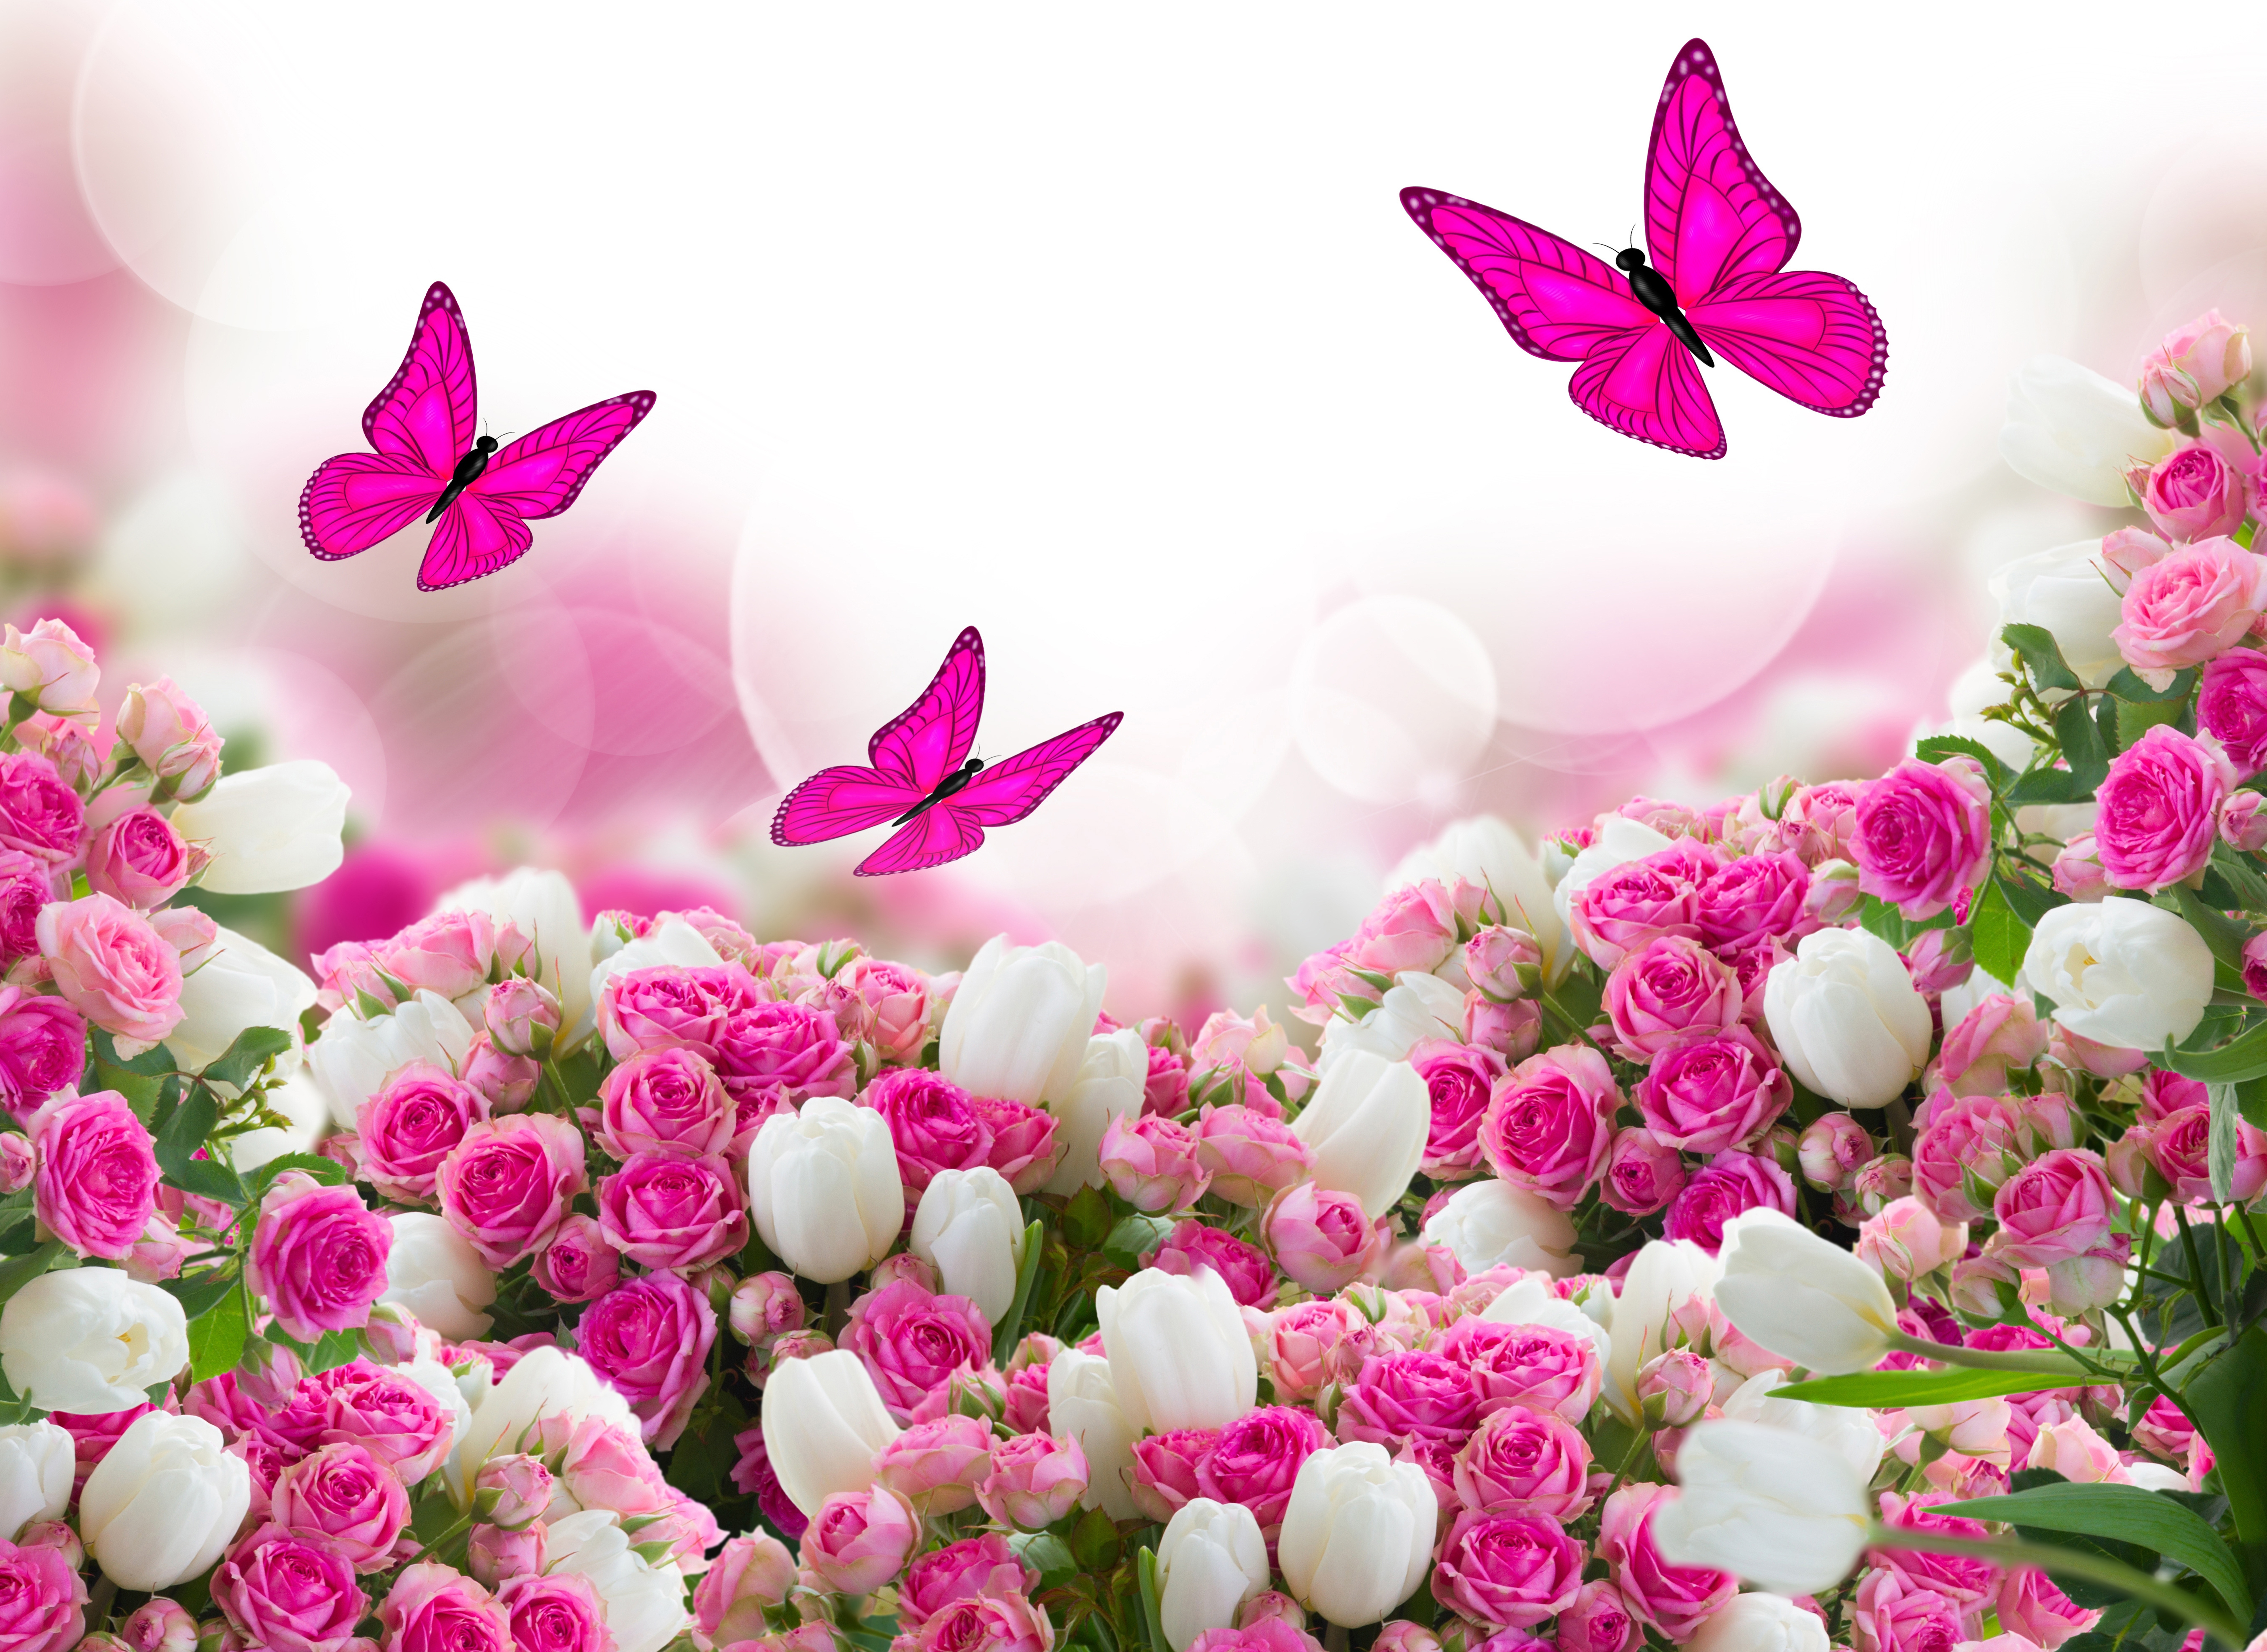 rozy-tyulpany-listiki-cvety-6269.jpg